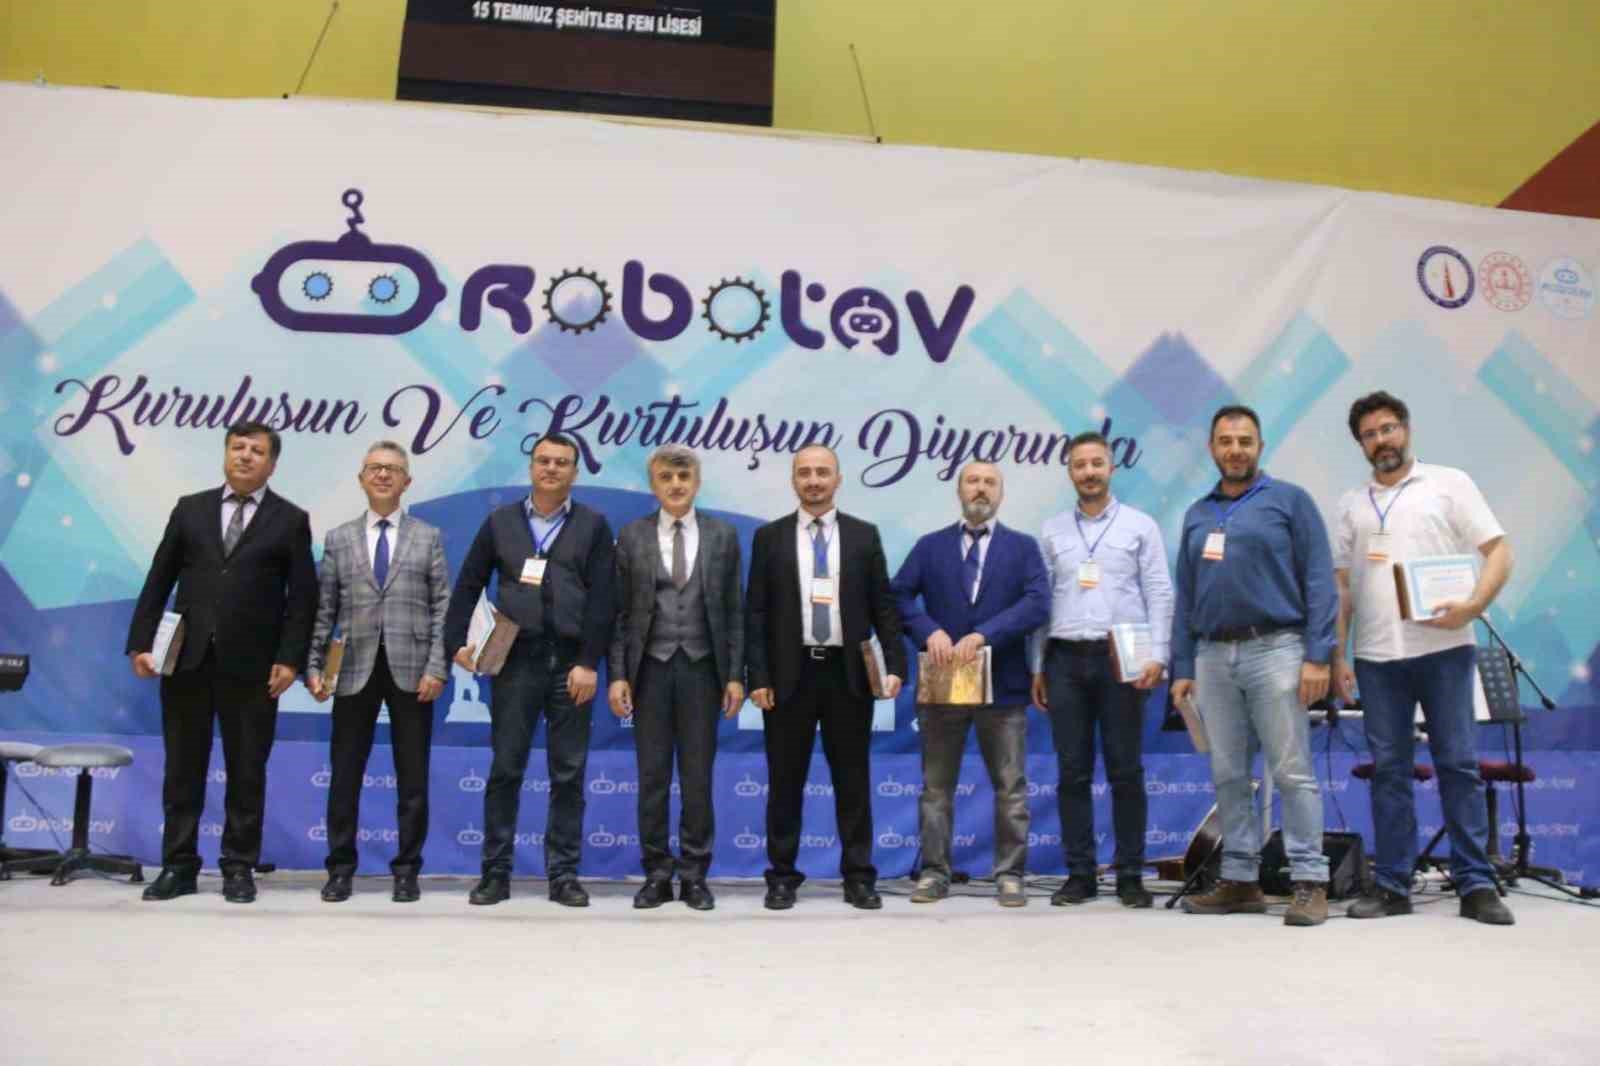 Tavşanlı’da “Robotav 2023” isimli robot yarışması